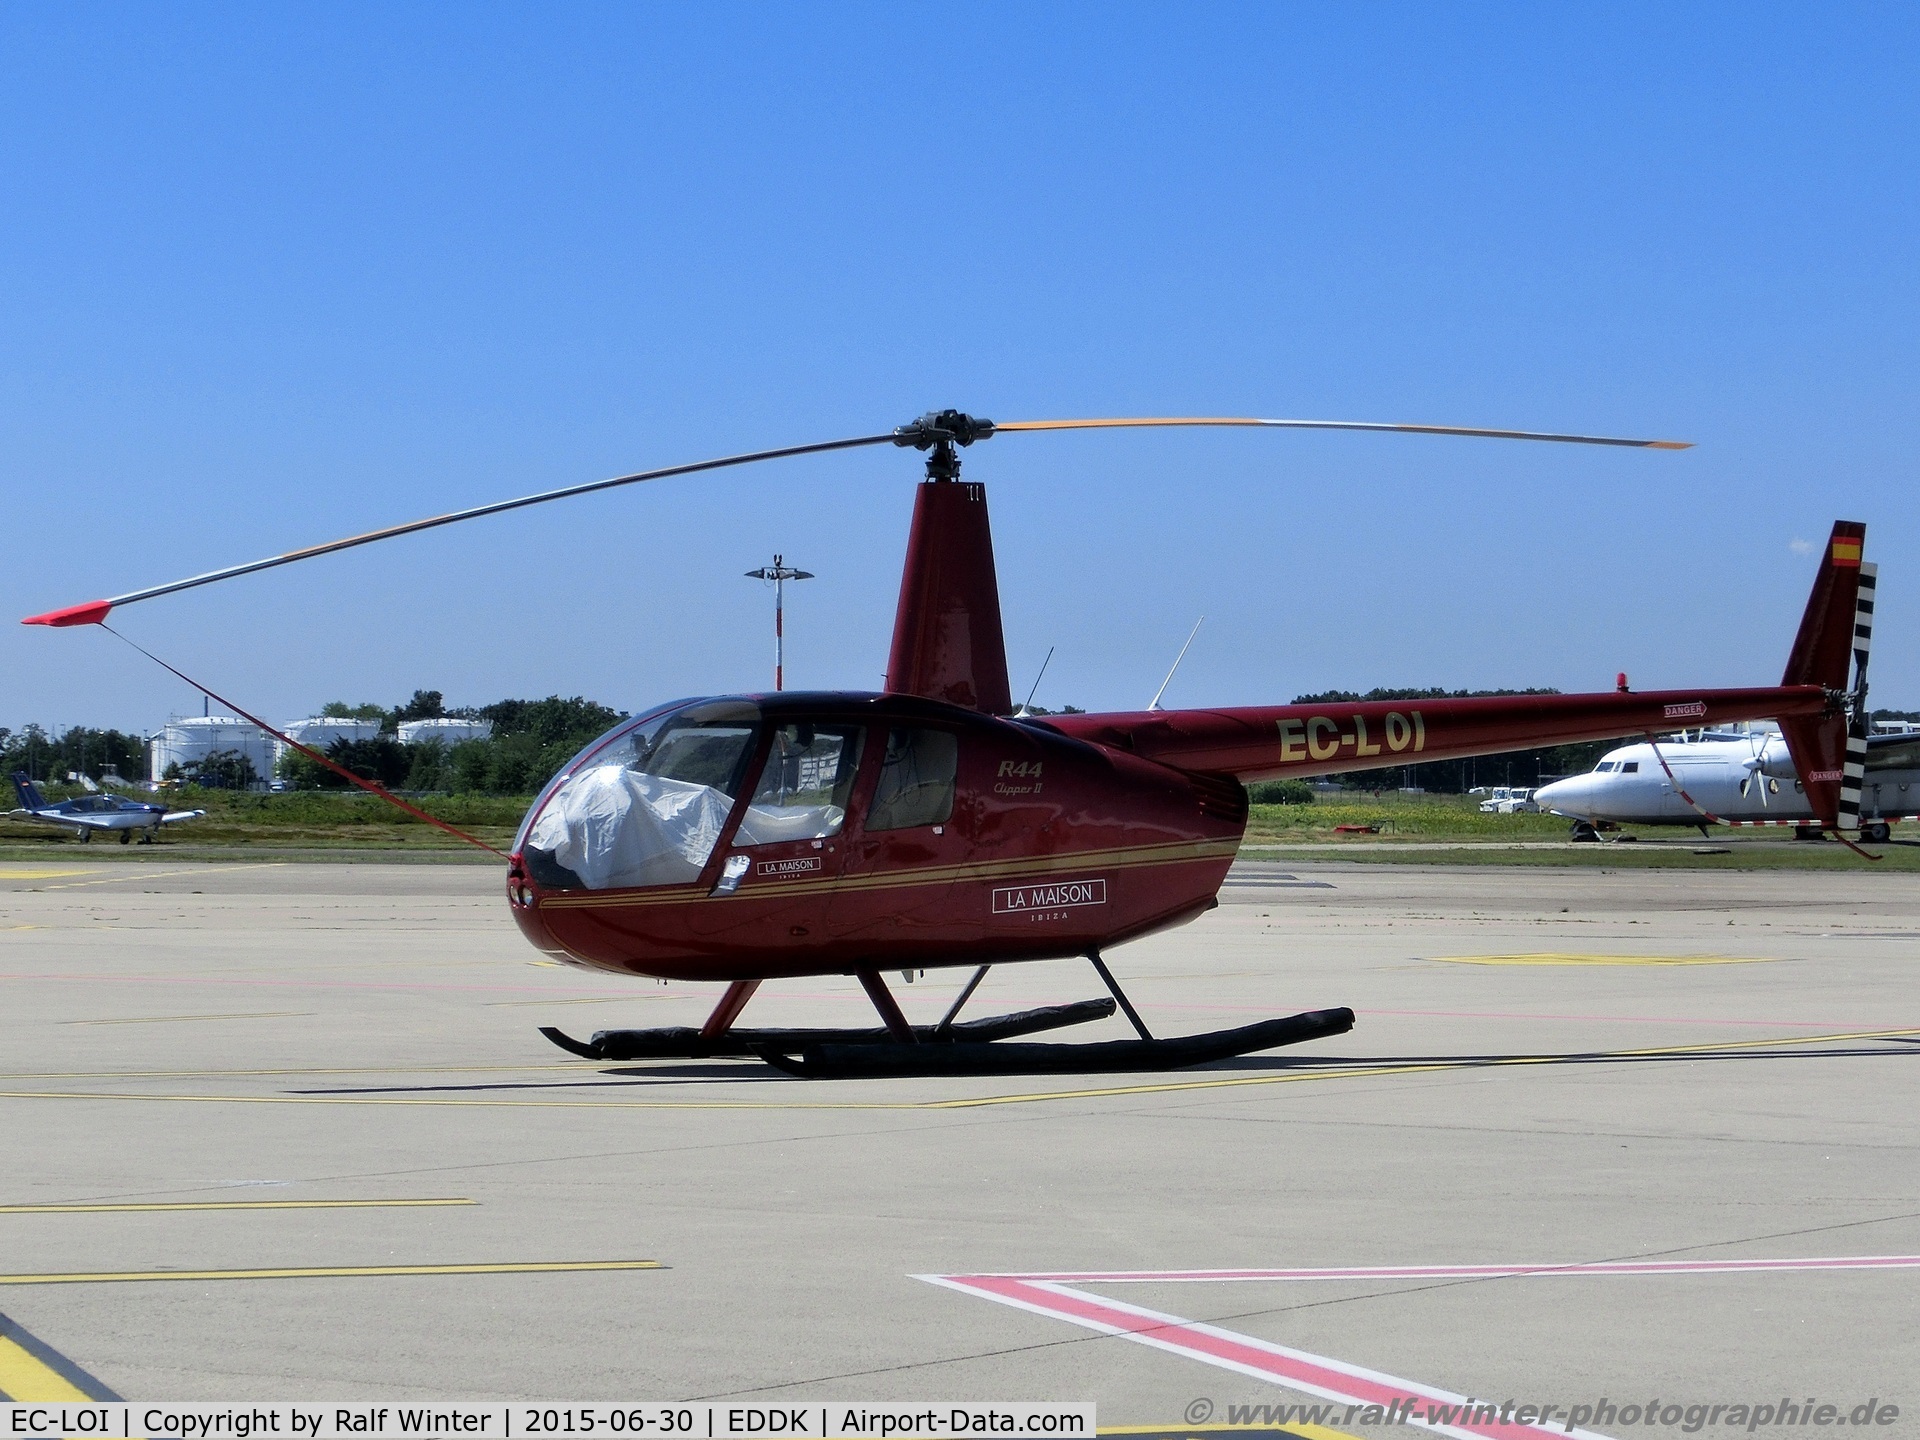 EC-LOI, 2009 Robinson R44 Clipper I C/N 12927, Robinson Helicopter Co R44 Clipper II - Privat - EC-LOI - 30.06.2015 - CGN